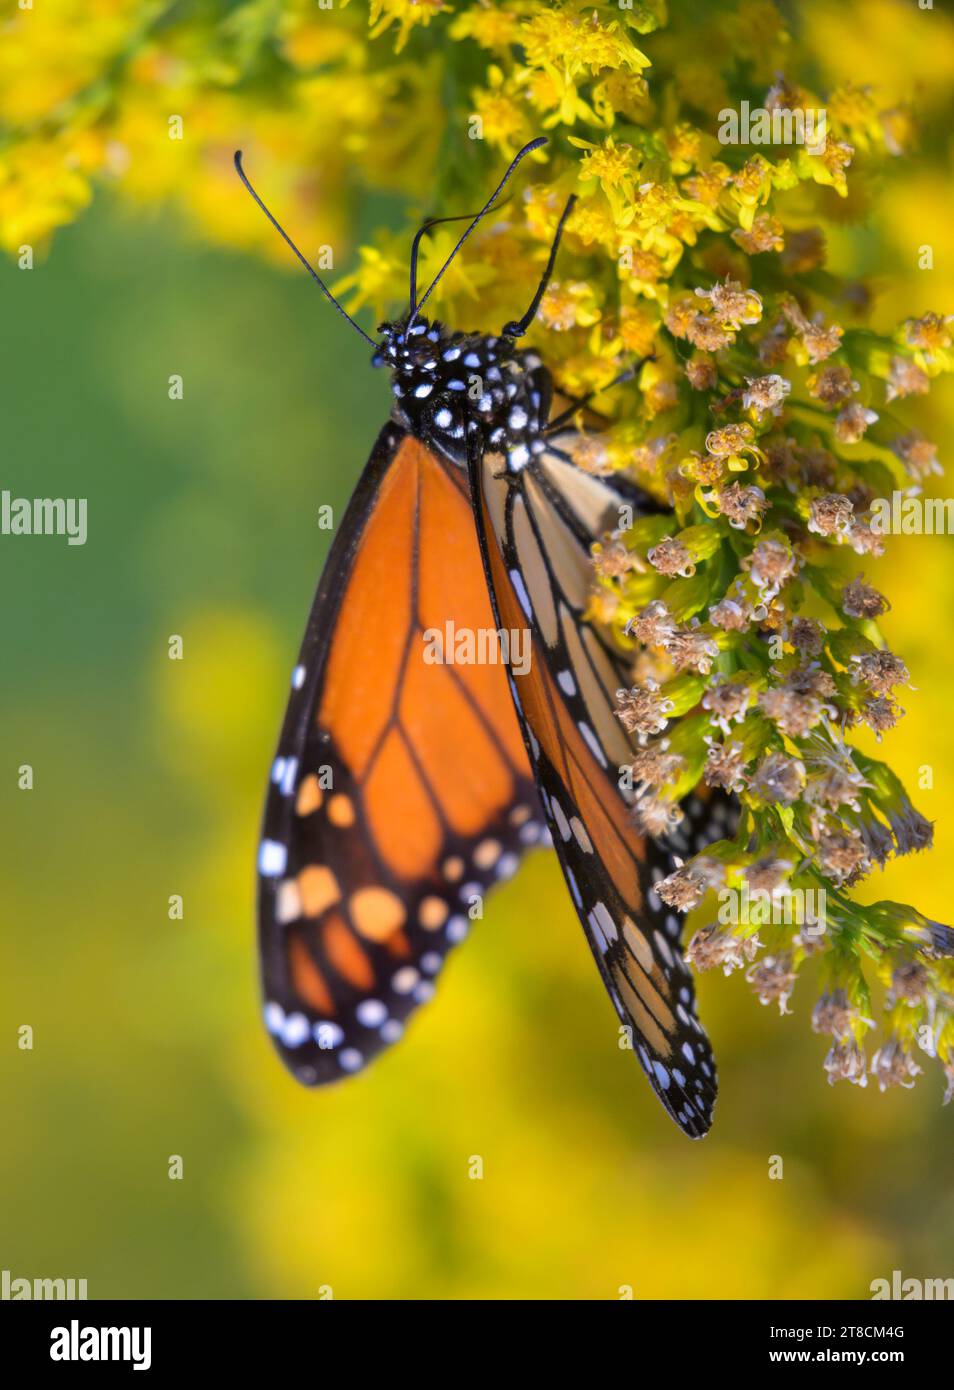 La farfalla monarca (Danaus plexippus) si nutre di fiori di goldenrod (Solidago sempervirens) durante la fioritura autunnale, Galveston, Texas, USA. Foto Stock